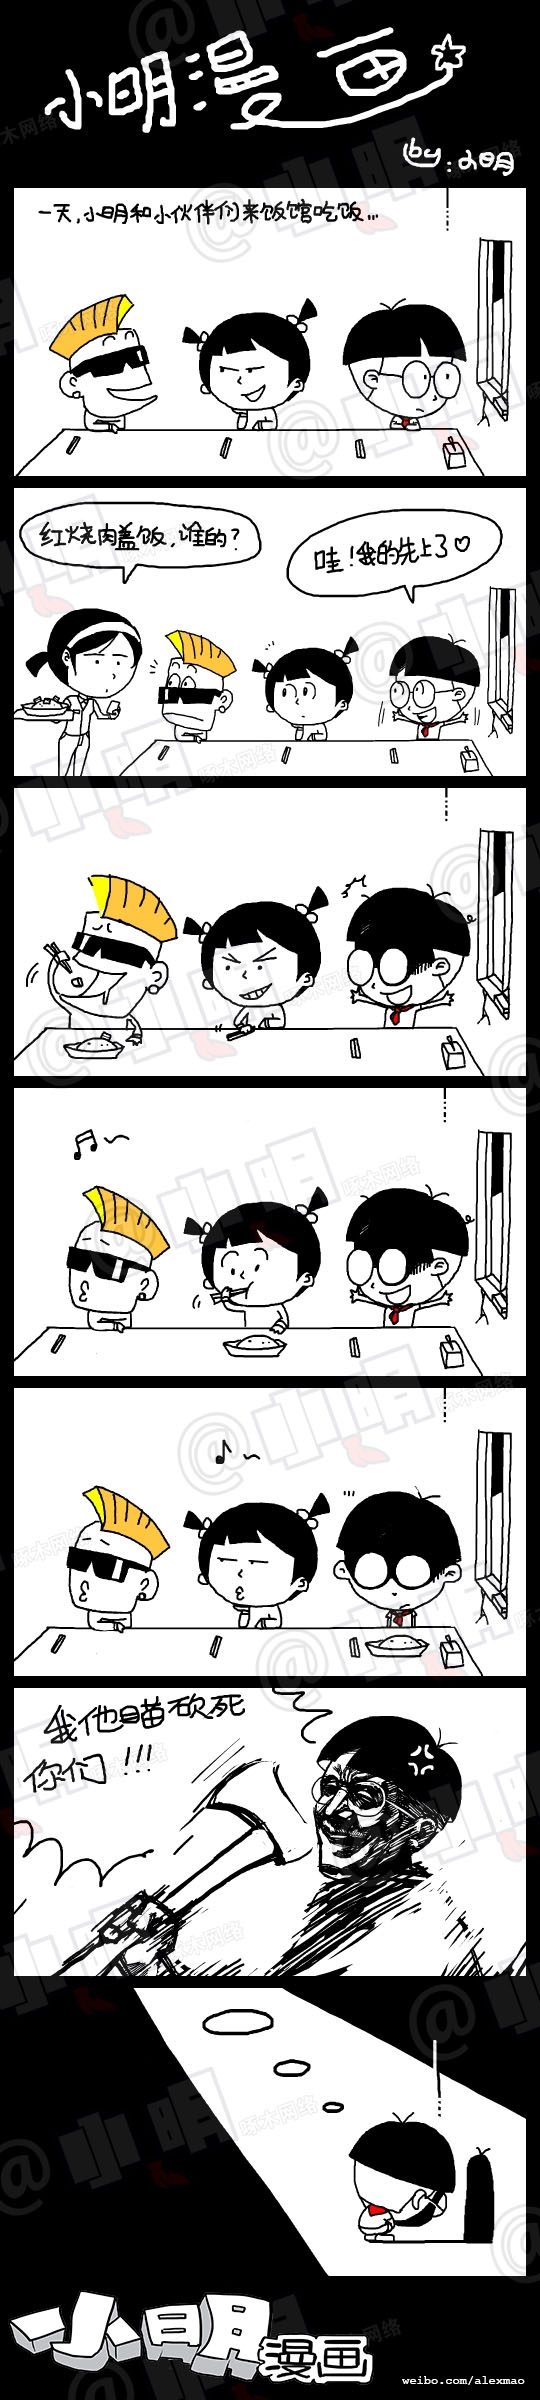 小明系列漫画——吃饭